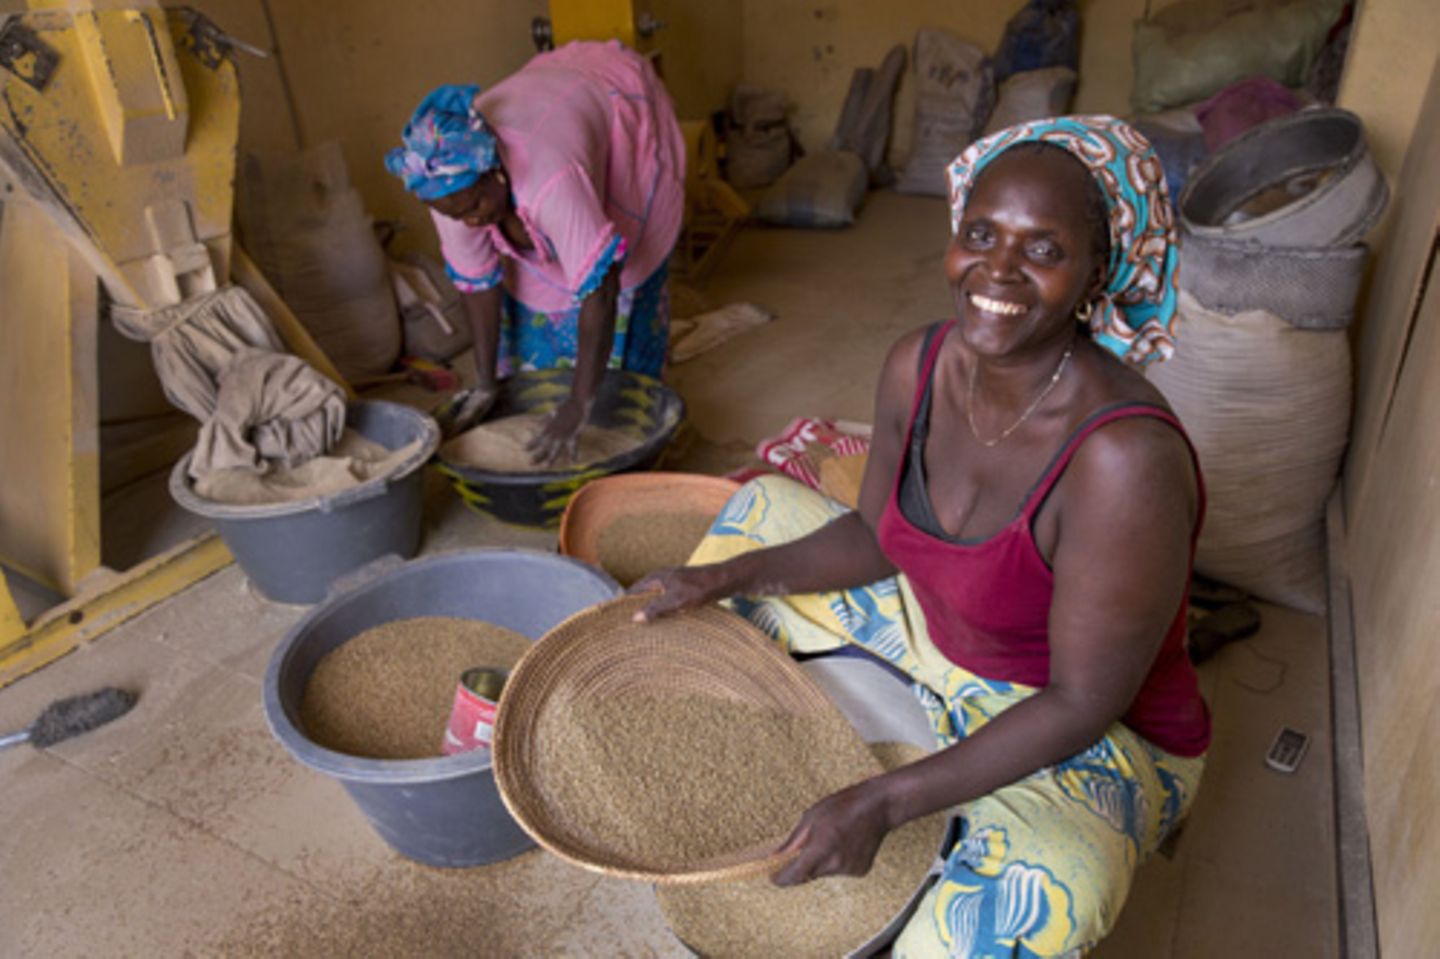 Thies, Senegal: Arbeiterinnen in einer Hirse-Fabrik. Der Verdienst ist gering, aber er ermöglicht den Frauen etwas finanzielle Unabhängigkeit.